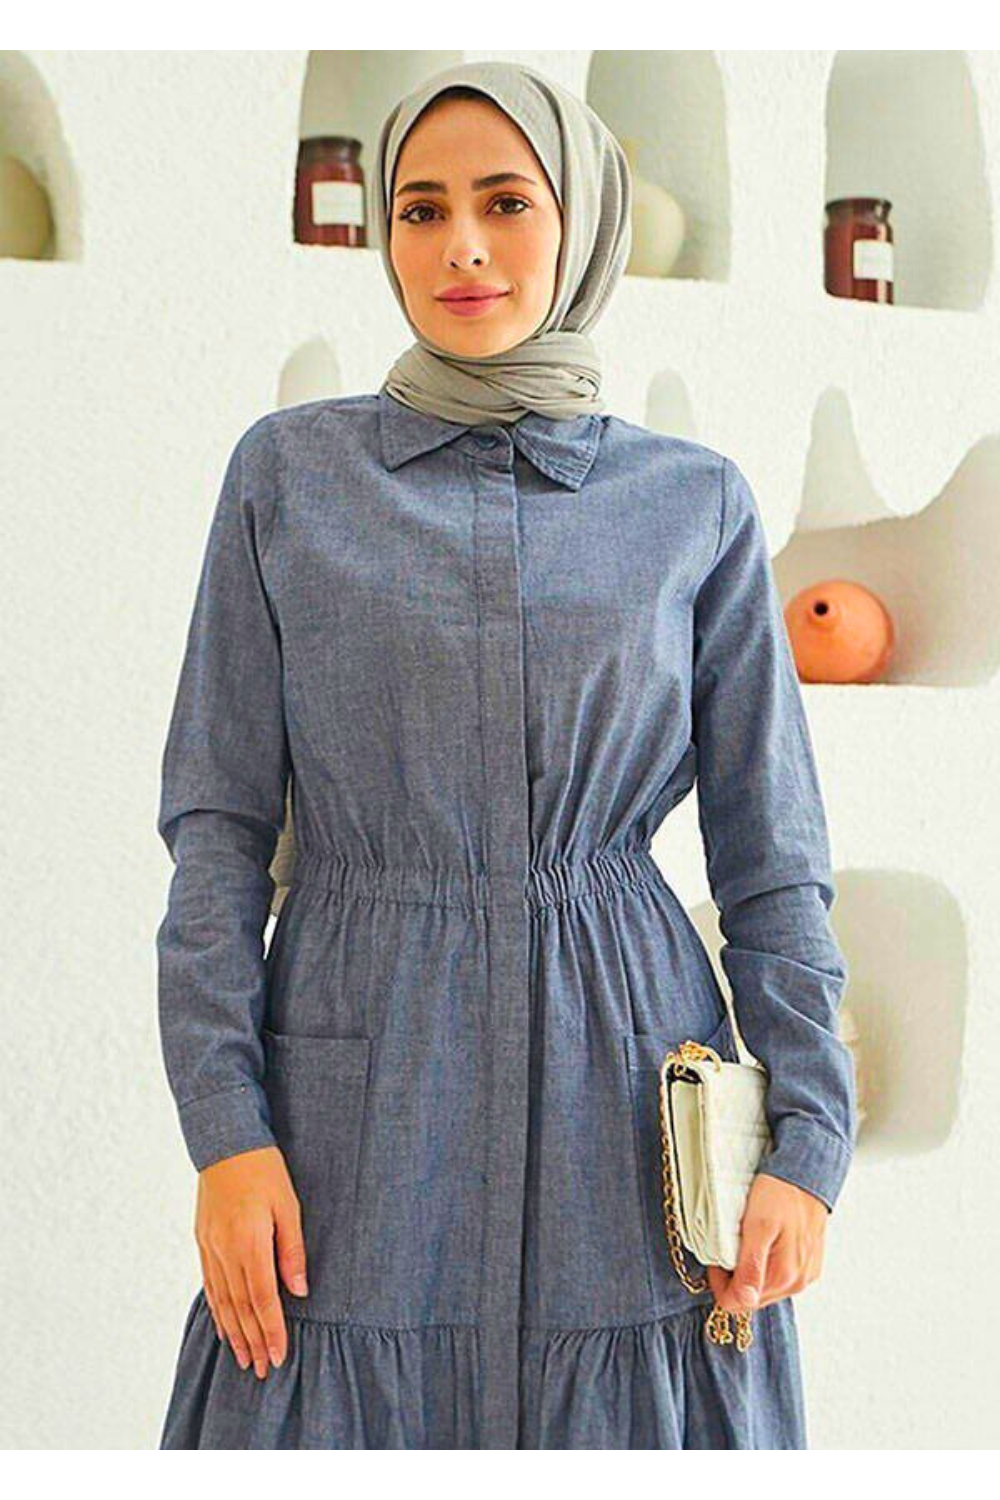 Muslim Women's Long Sleeve Maxi Dress with Tiered Skirt - Modest Design Maxi Dress By Baano 40 Gray Denim 